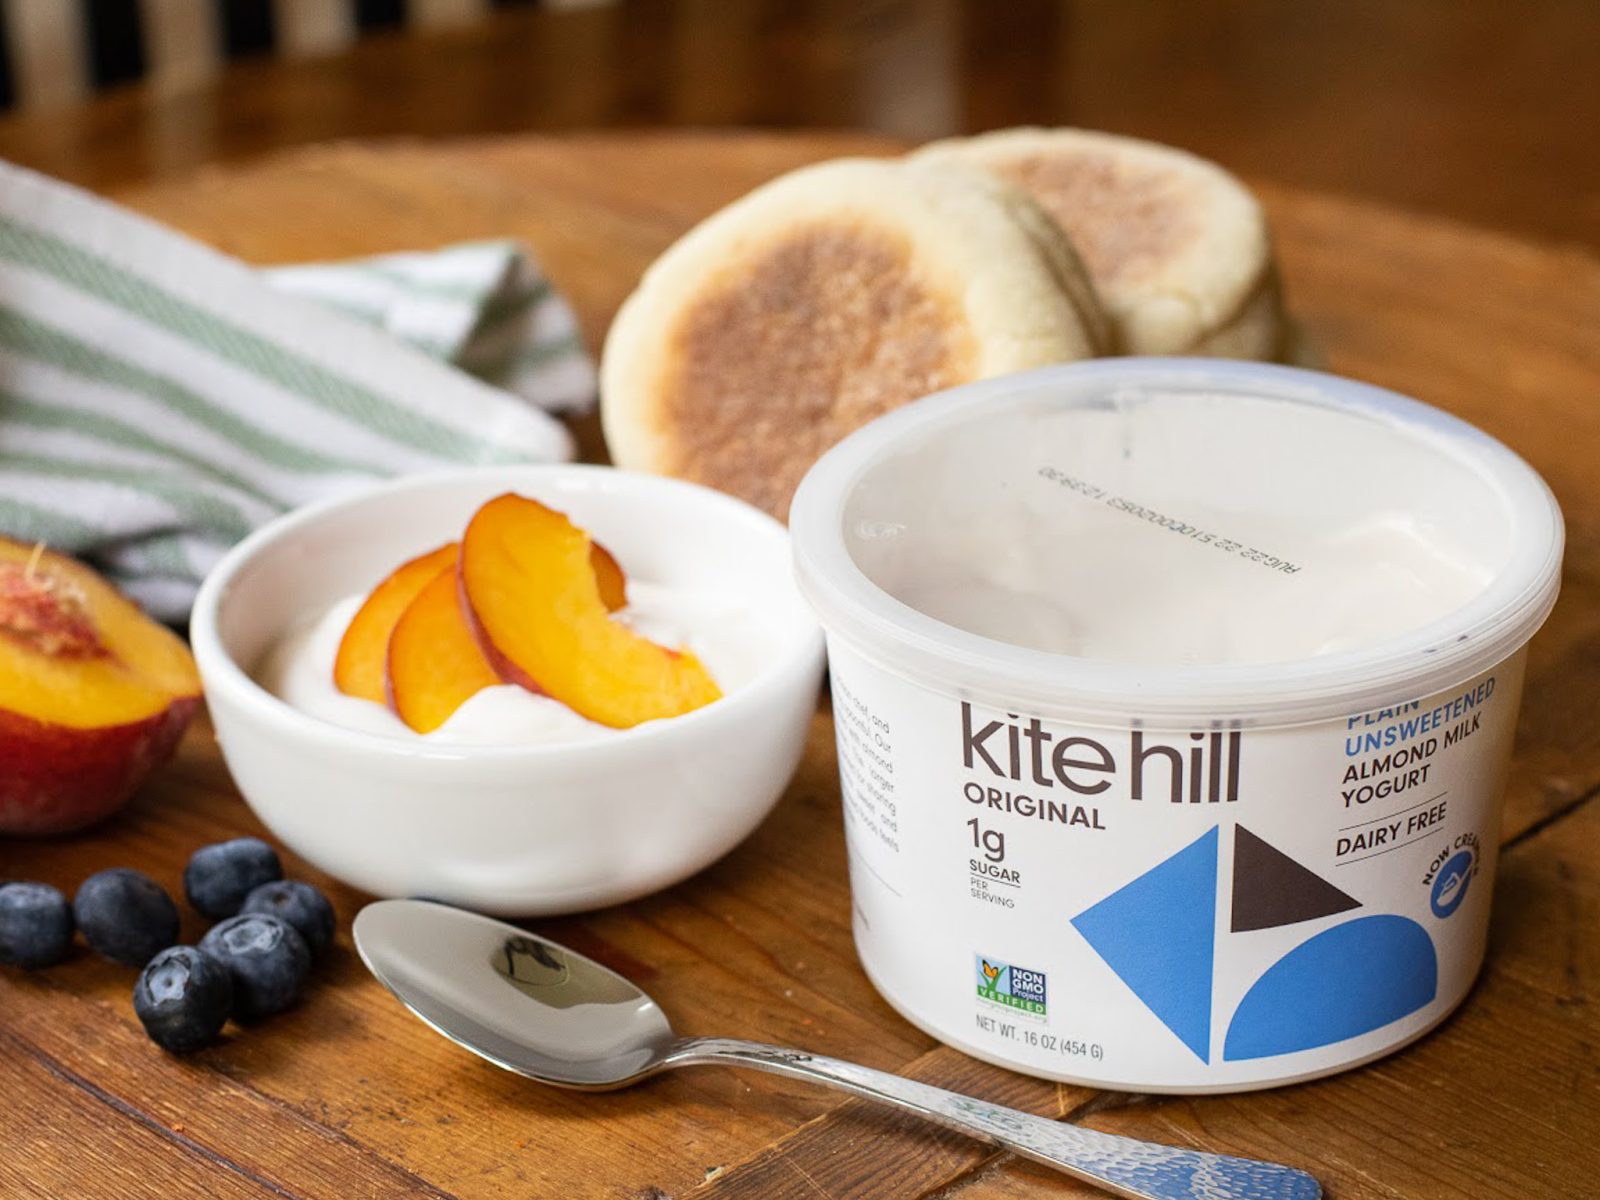 Big Tubs Of Kite Hill Almond Milk Yogurt Just $1 At Publix